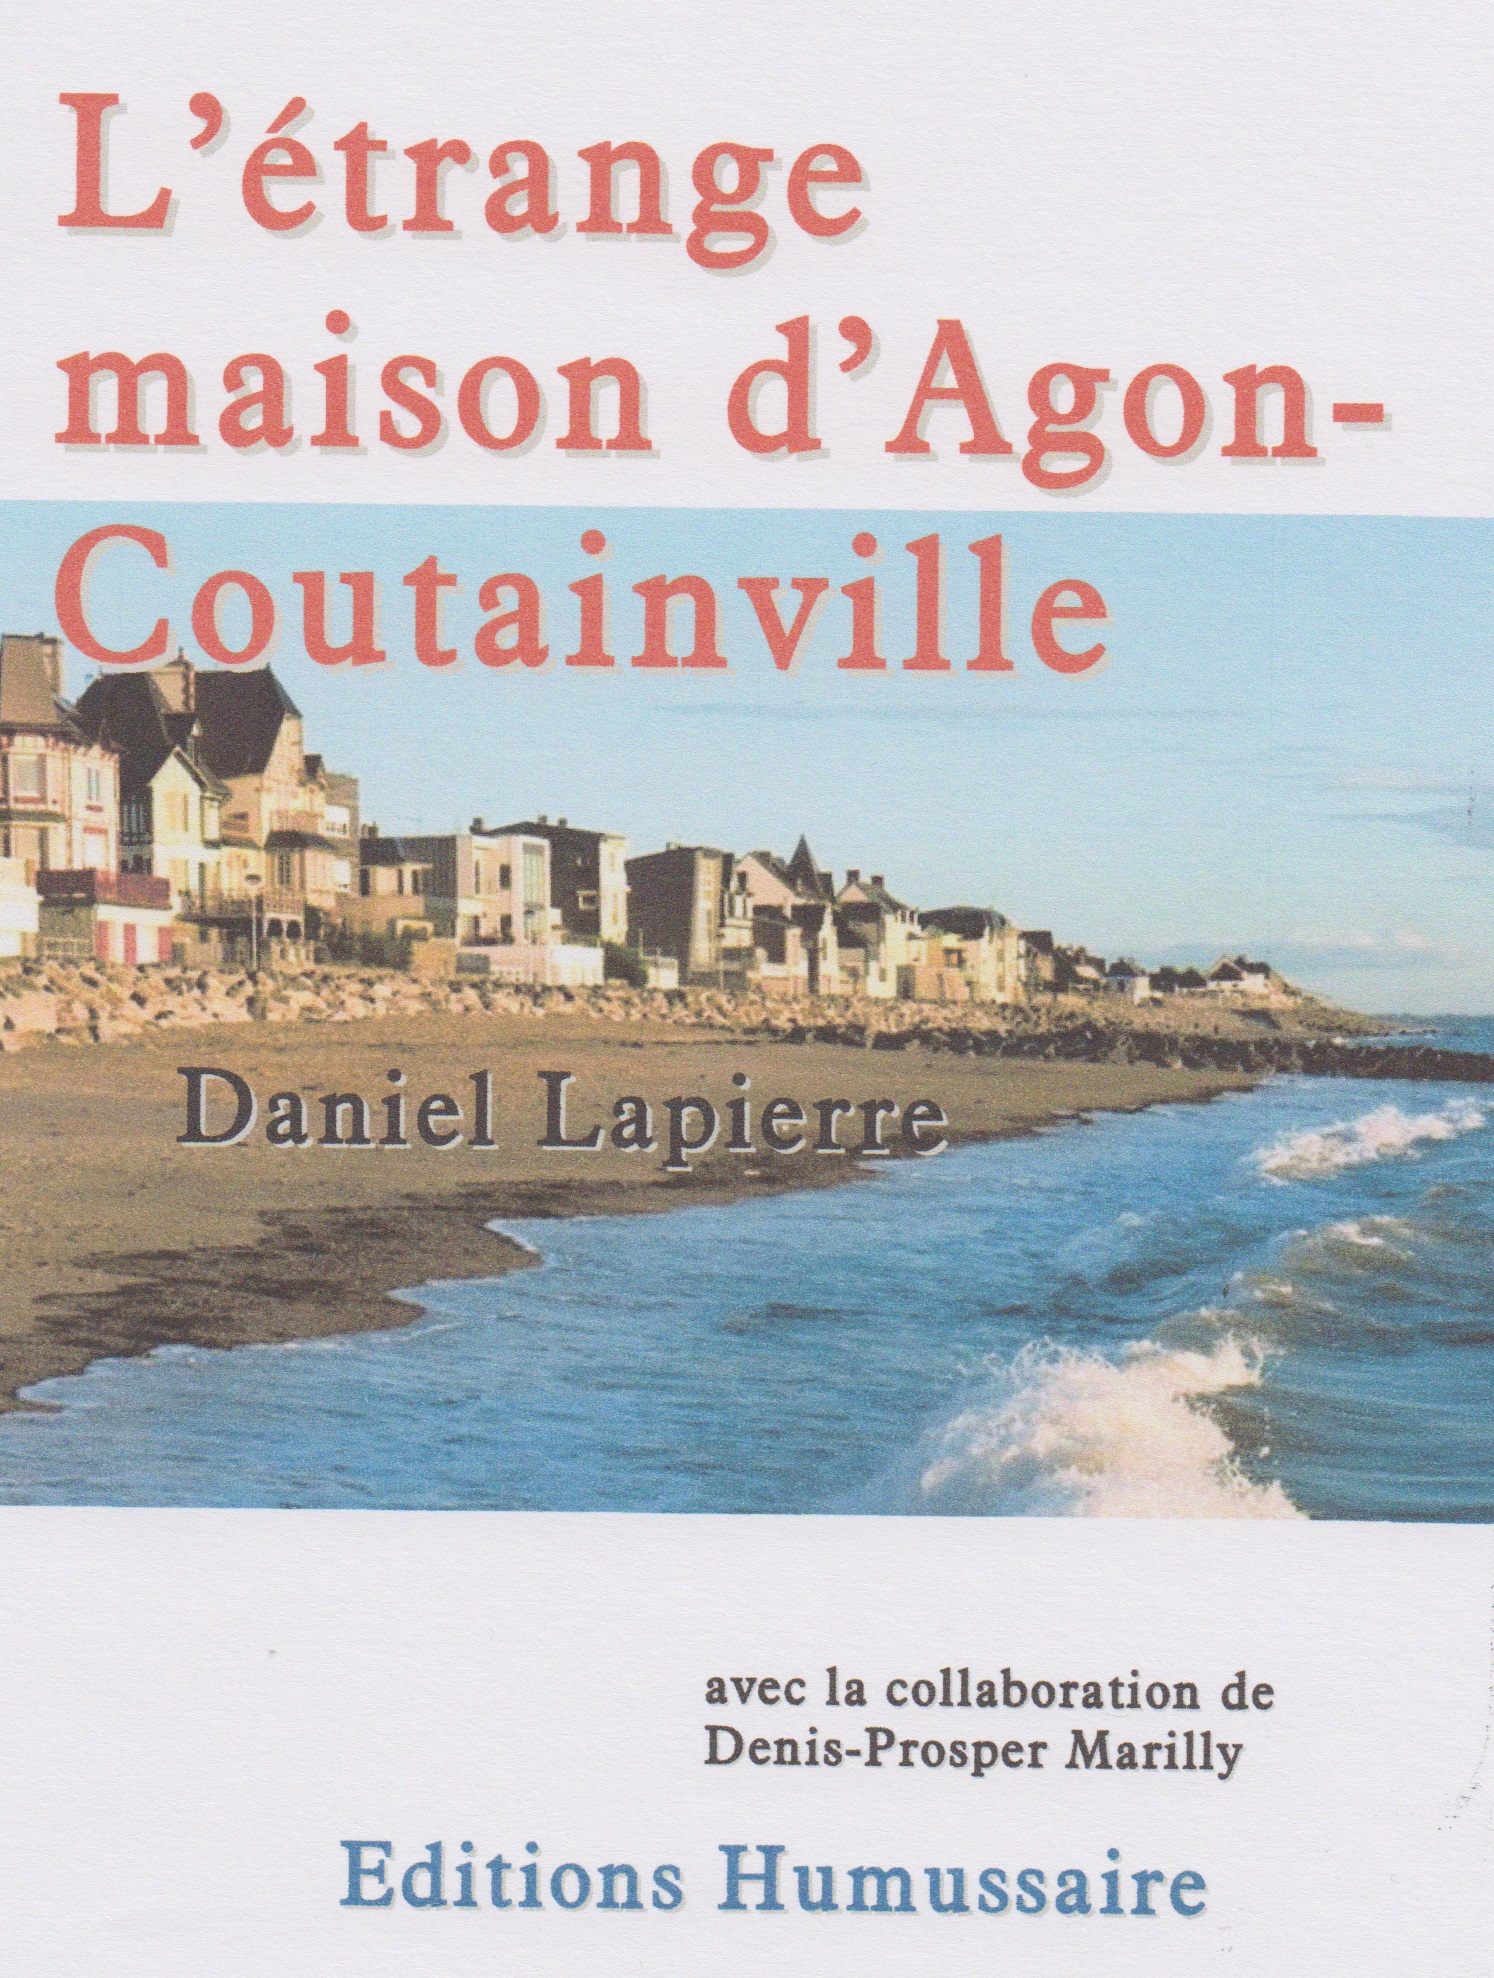 L'étrange maison d'Agon-Coutainville - Daniel Lapierre avec la collaboration de Denis-Prosper Marilly